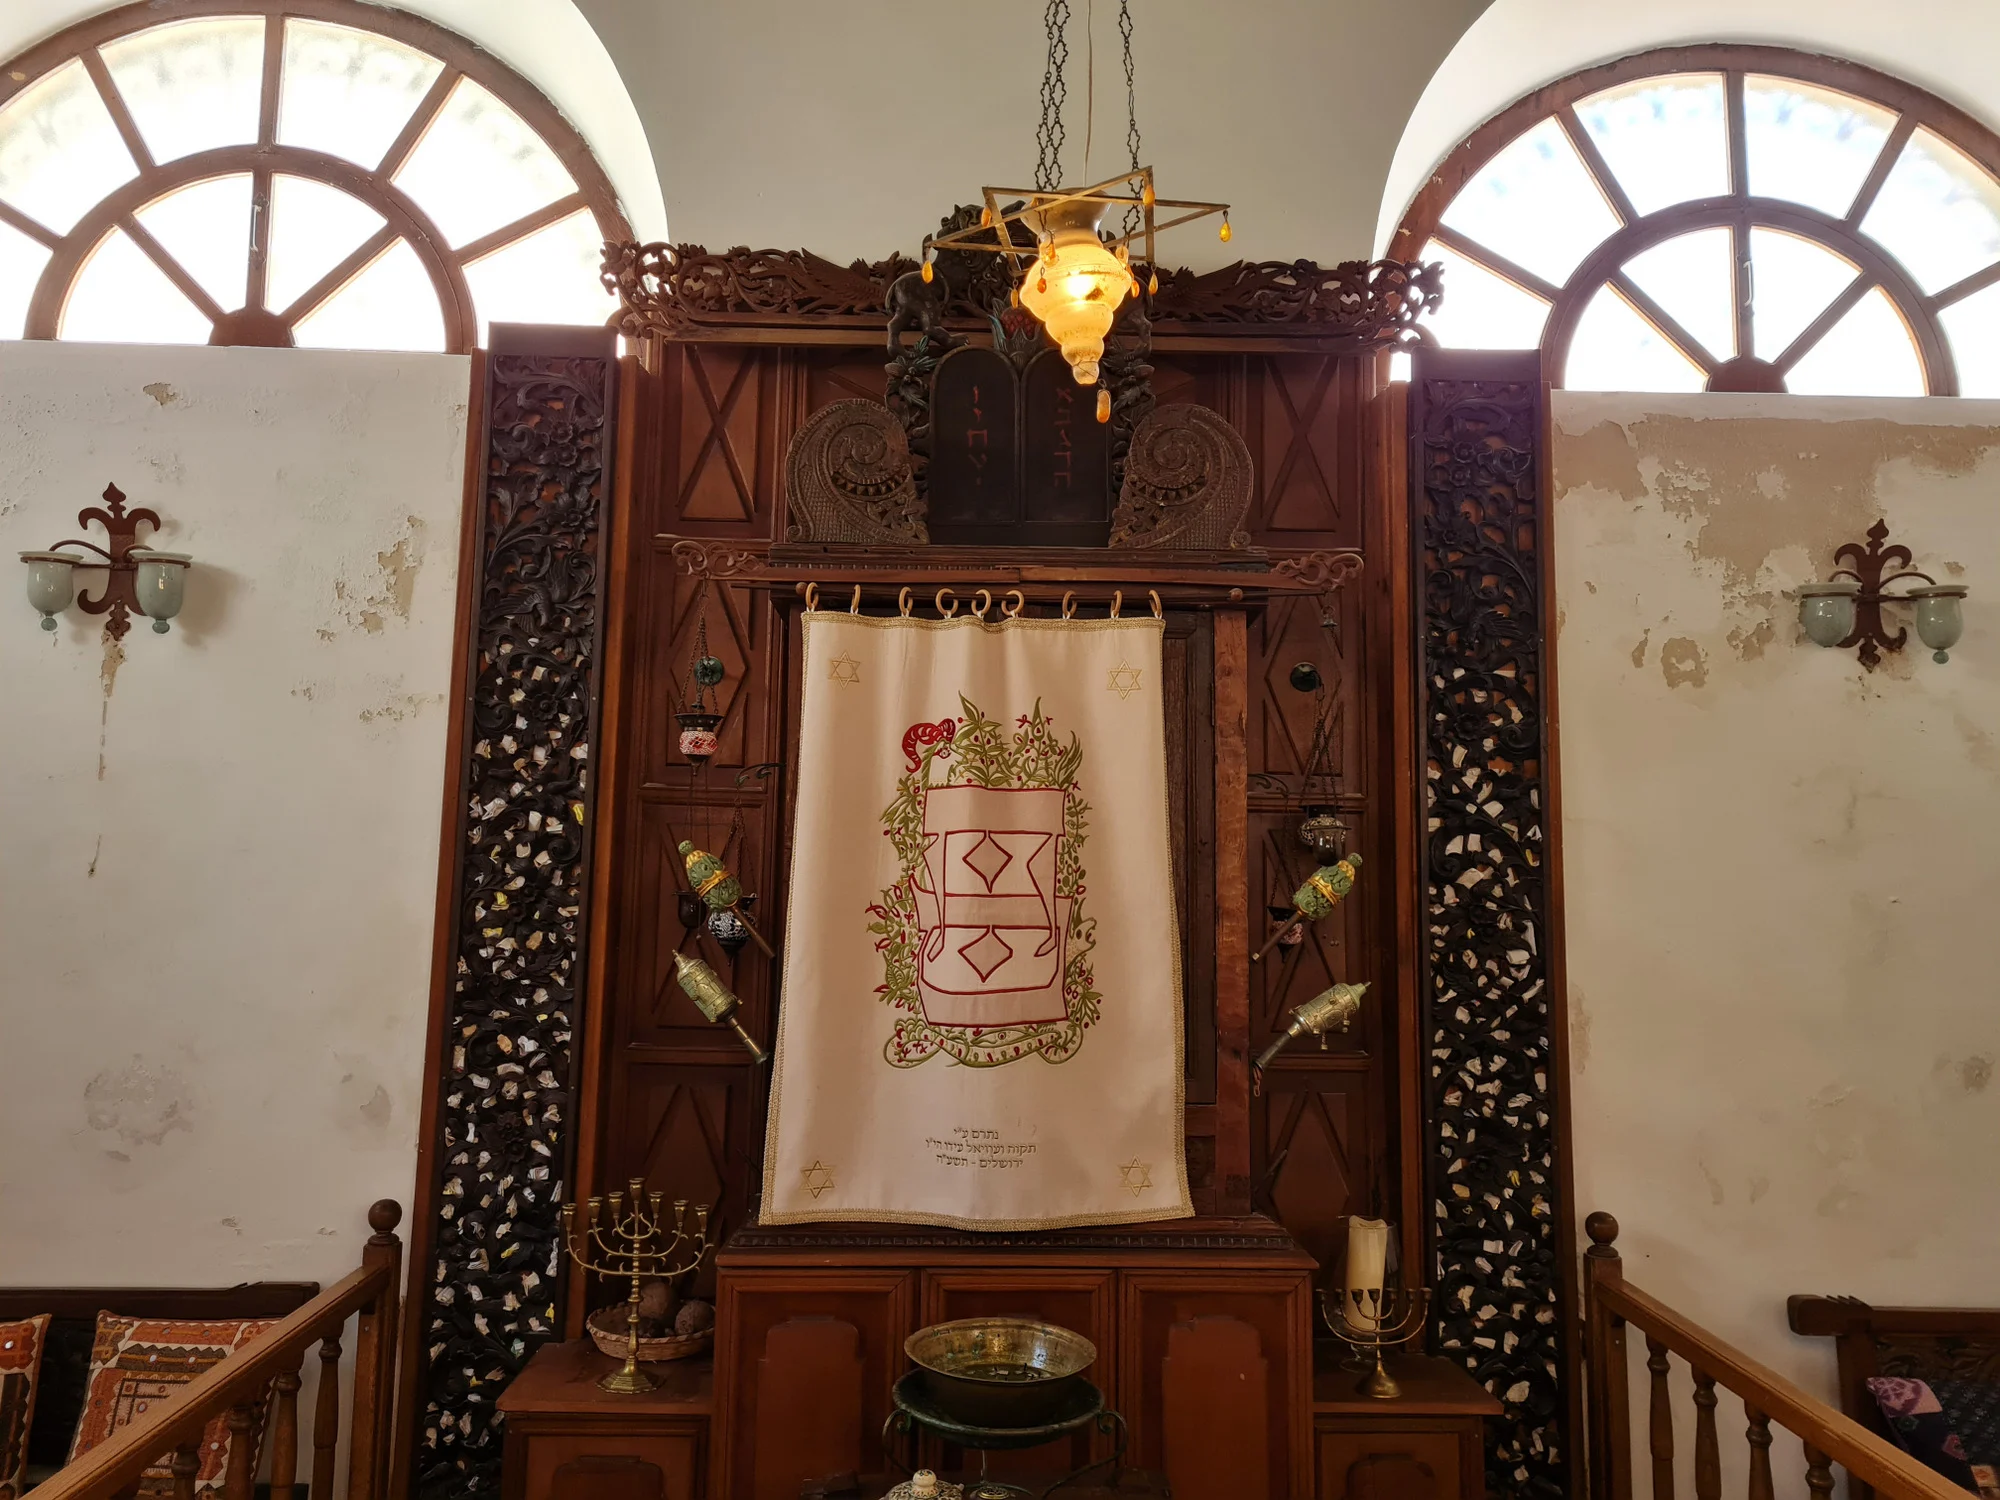 בית הכנסת בכרתים. צילום: ינינה זסלבסקי אפק